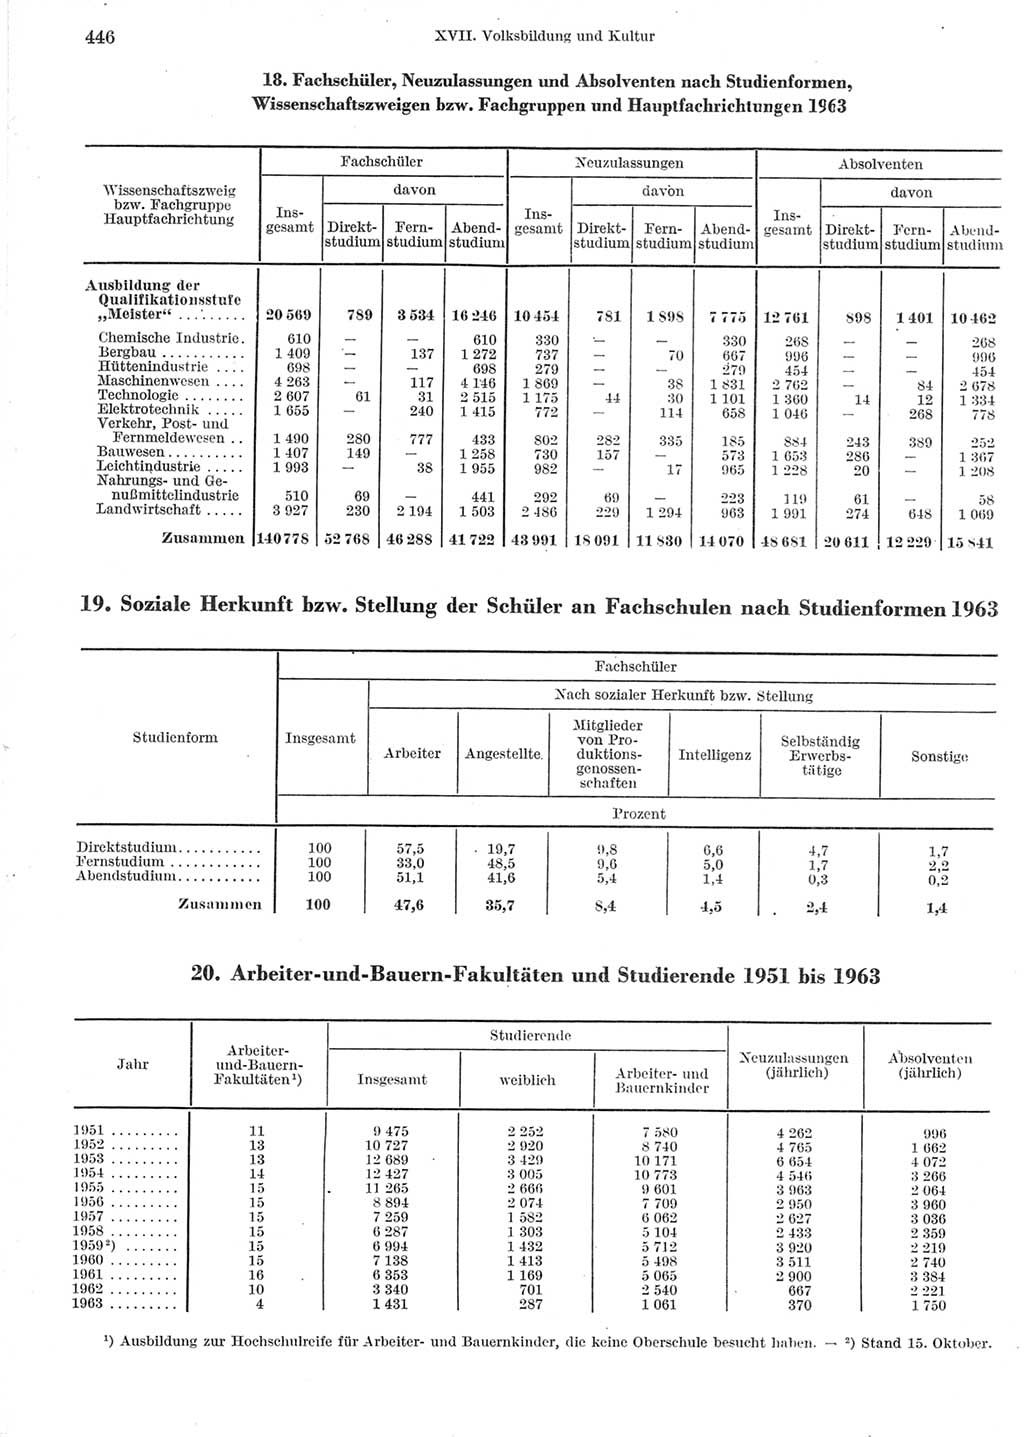 Statistisches Jahrbuch der Deutschen Demokratischen Republik (DDR) 1964, Seite 446 (Stat. Jb. DDR 1964, S. 446)